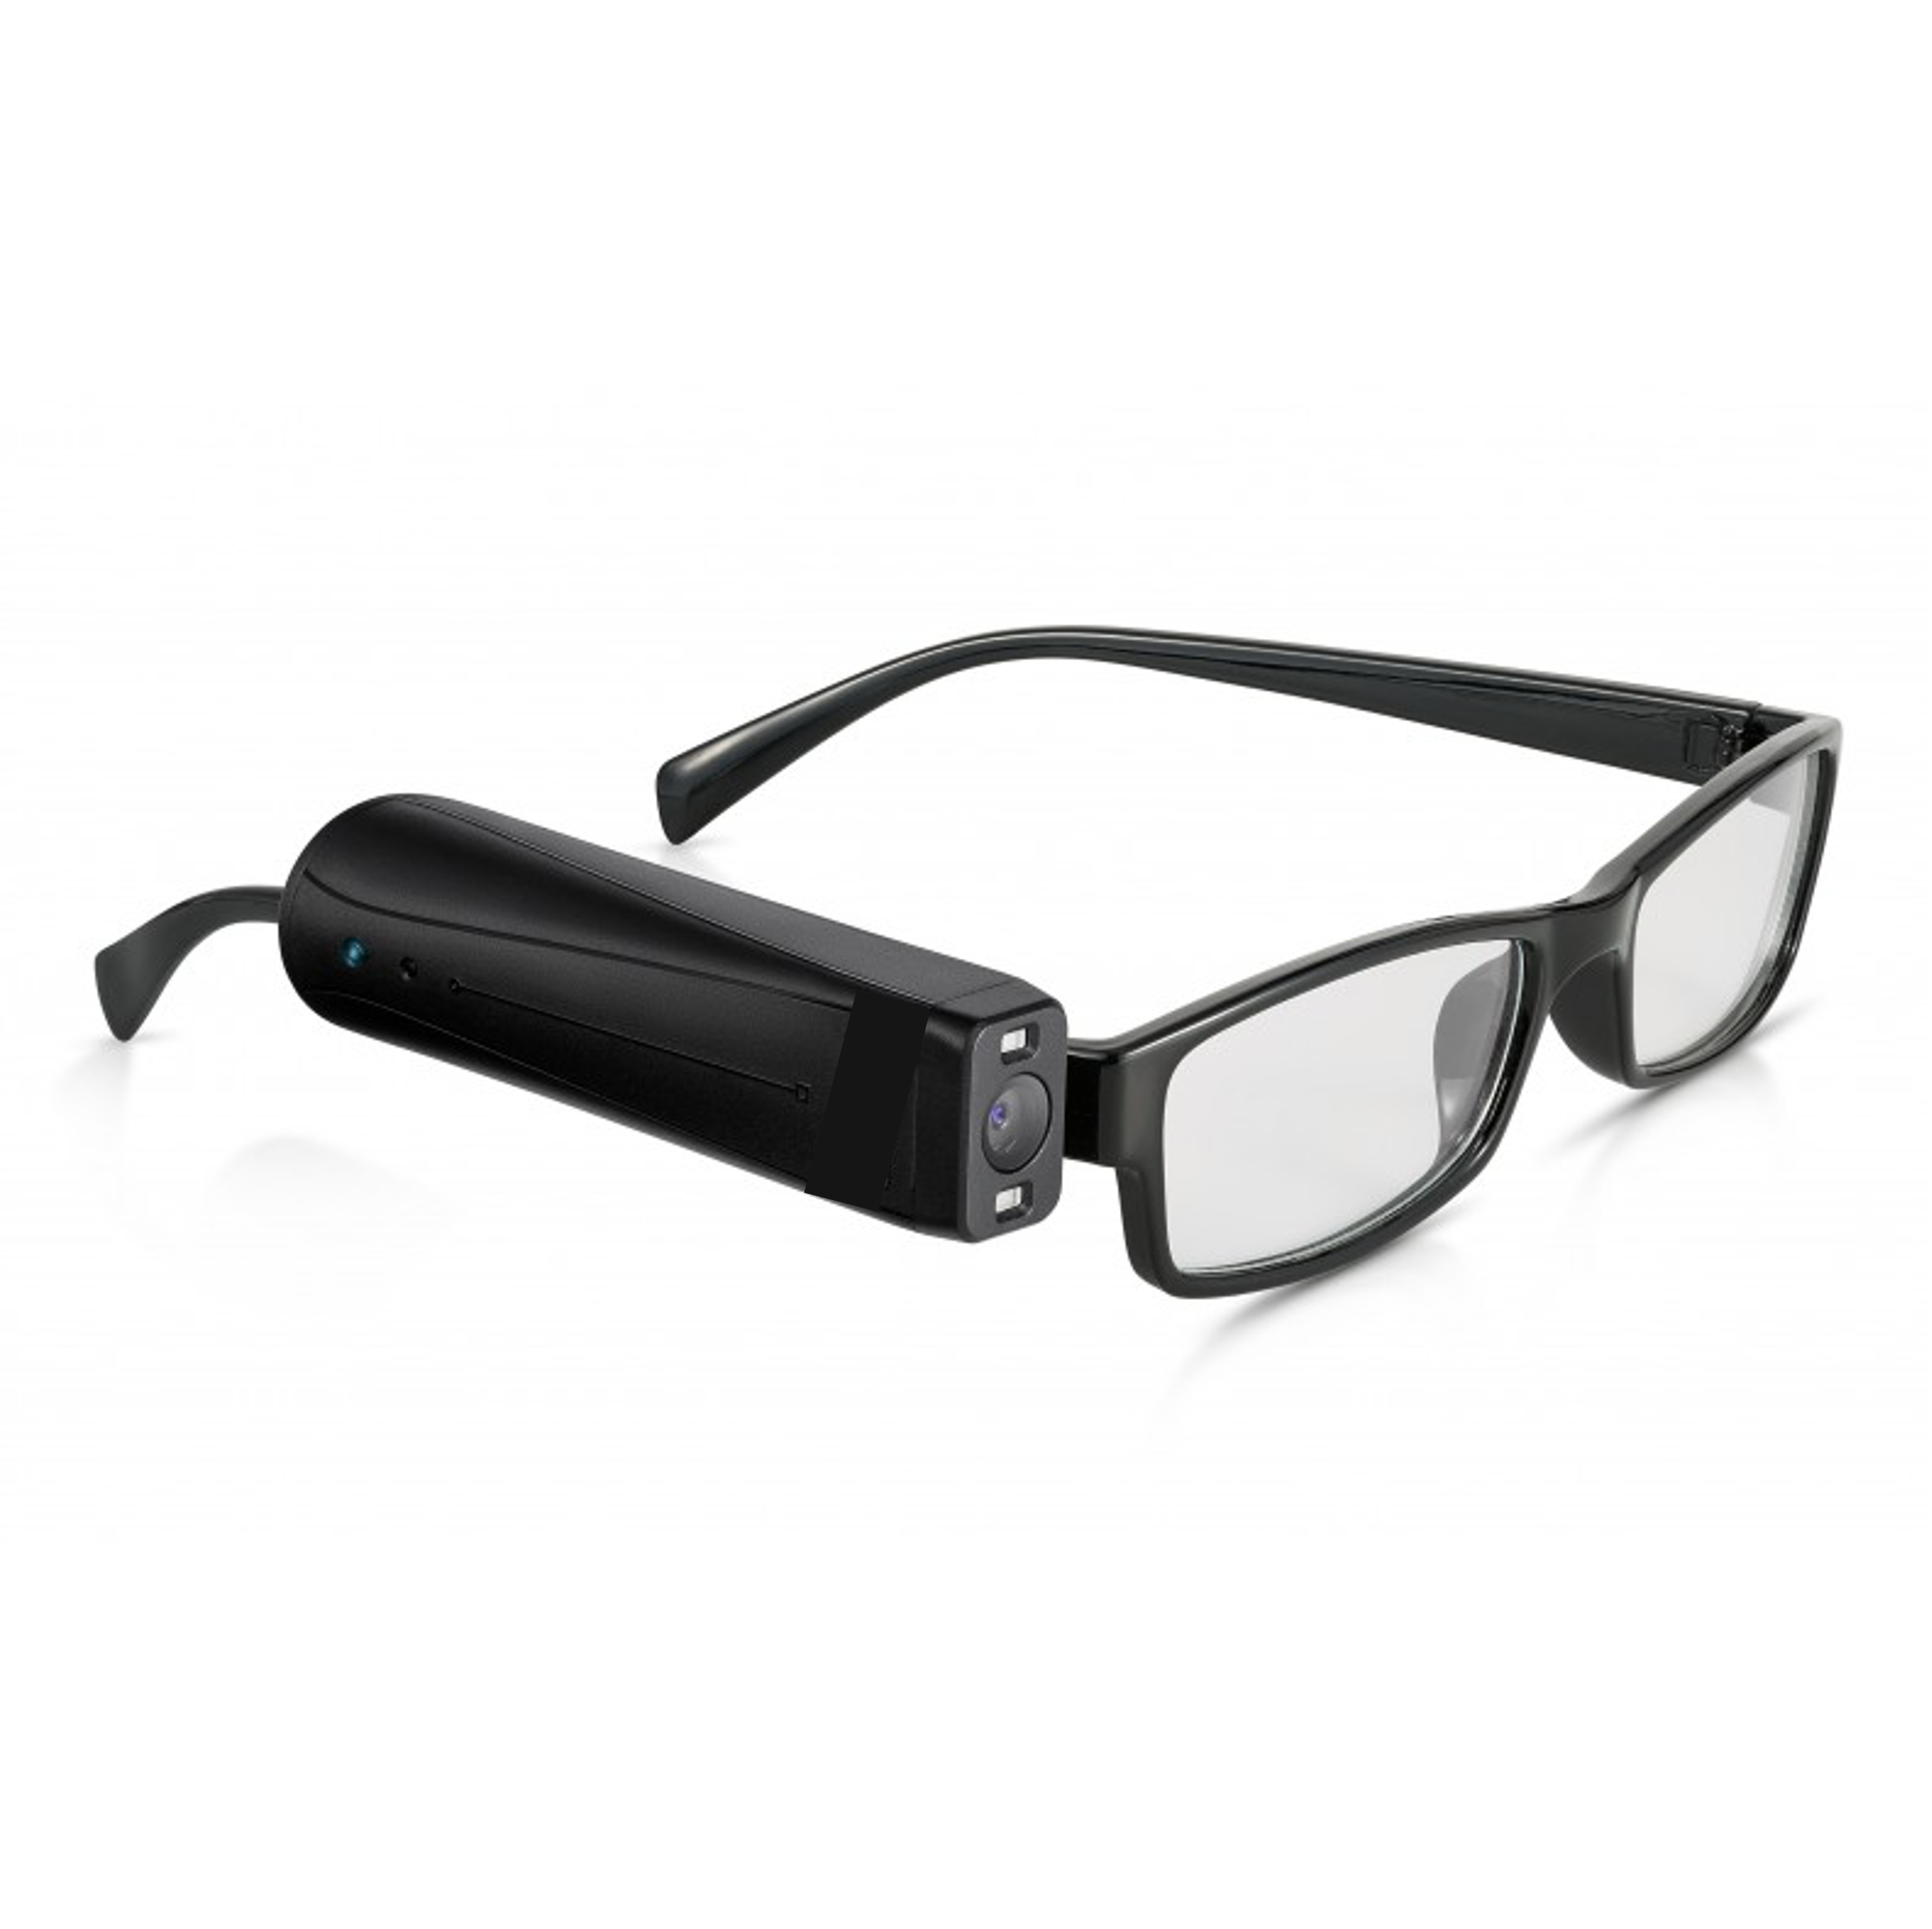 Monture de lunettes noire équipée d'un boitier avec caméra et boutons en relief sur le dessus